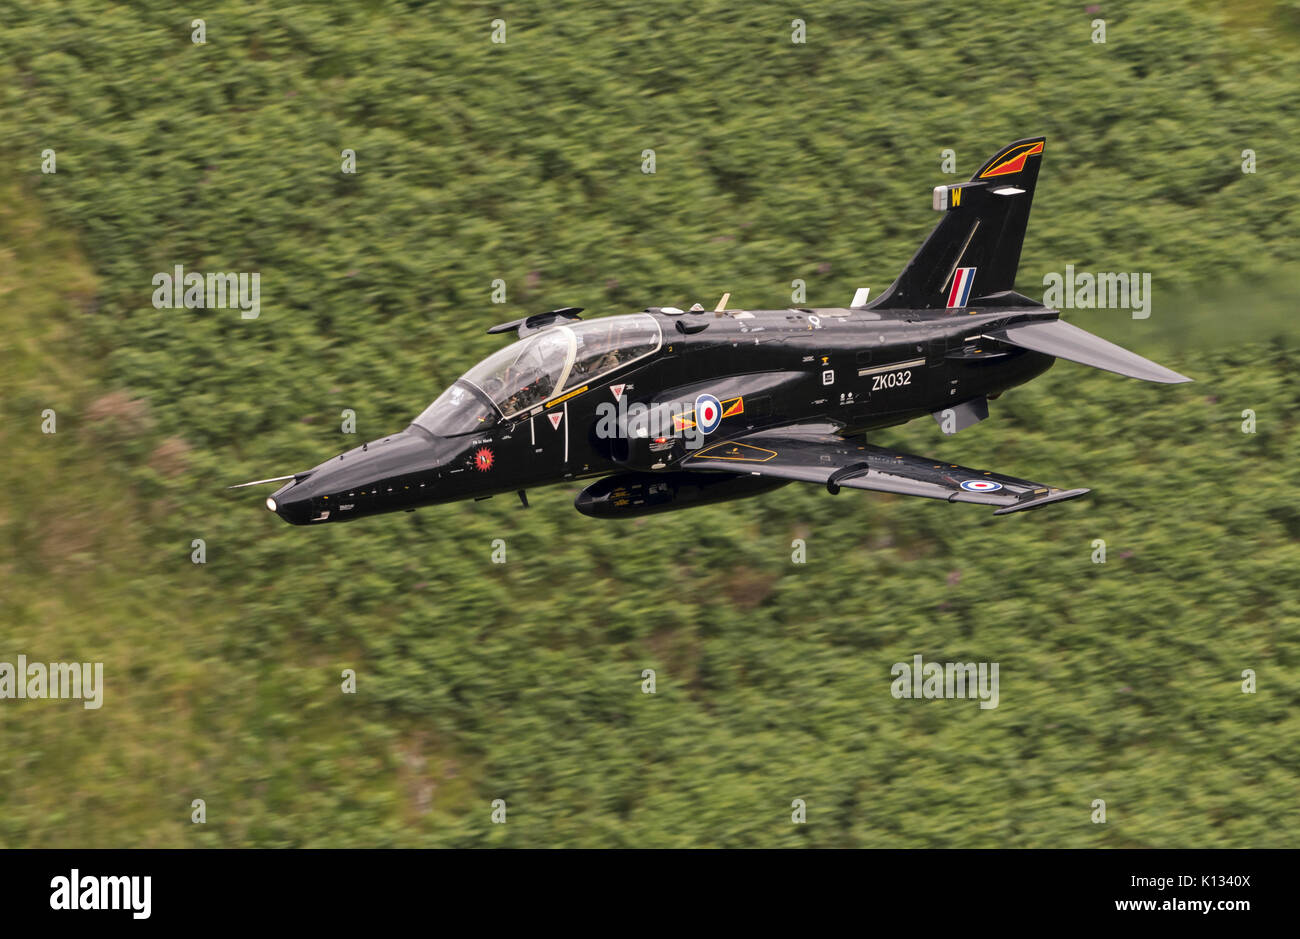 RAF Hawk T2 avion sur une formation de bas niveau dans la région de Snowdonia sortie de galles, MCL7 Mach Loop Banque D'Images